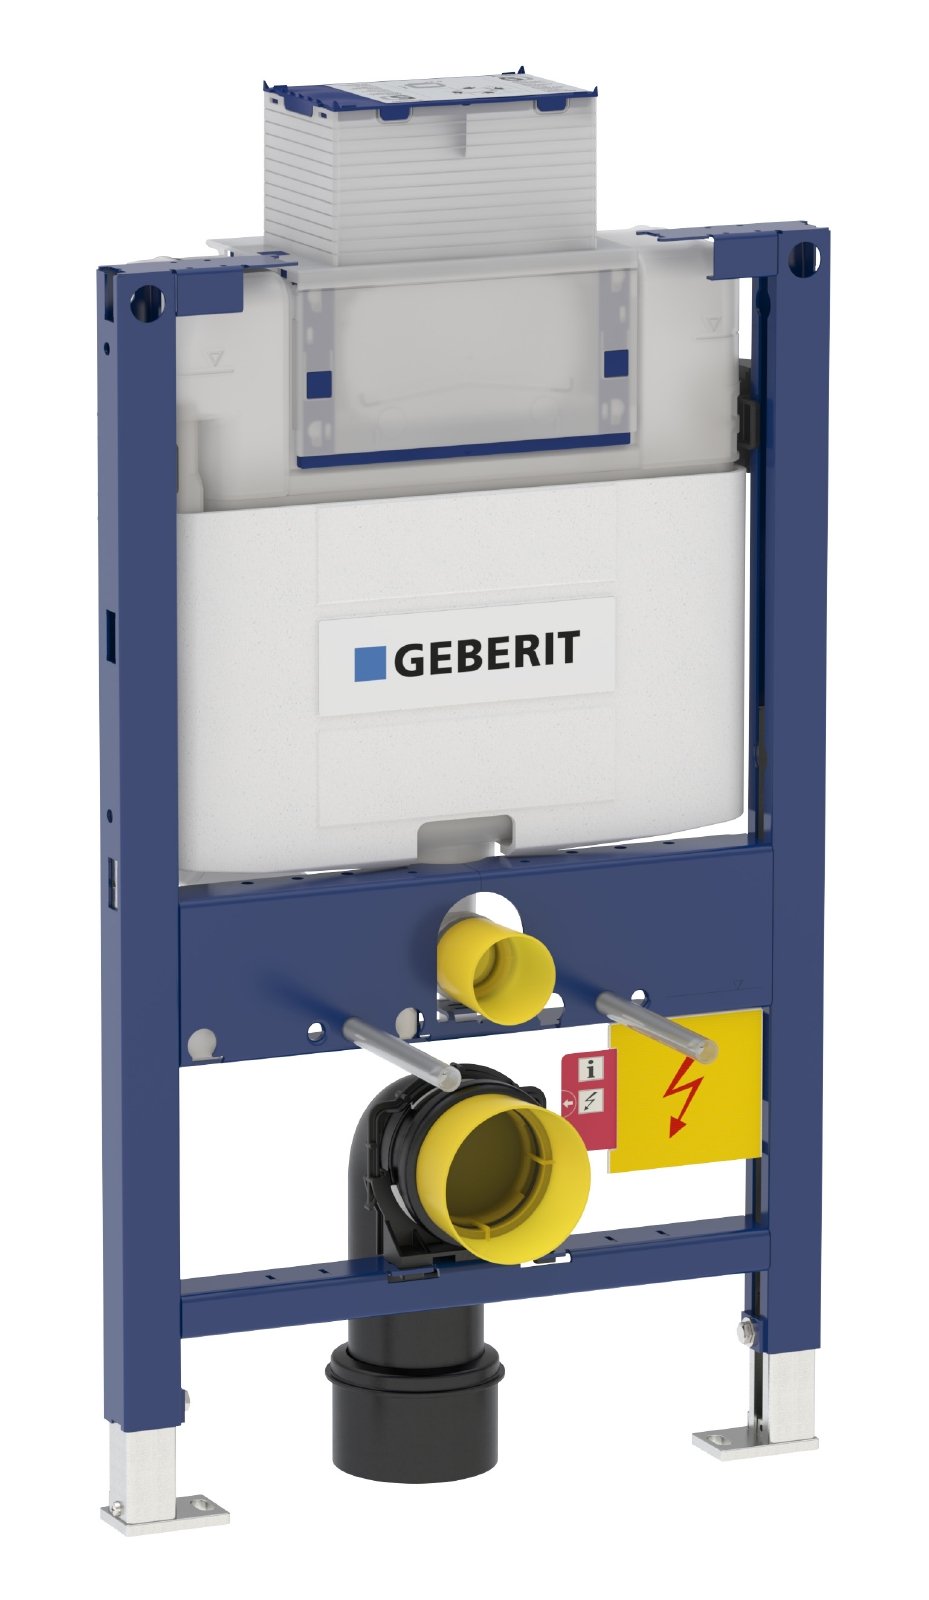 Geberit Montageelement Duofix, 111003001, Element für Wand-WC, mit Omega UP-Spülkasten, 2-Mengen-Spülung, 21107 9